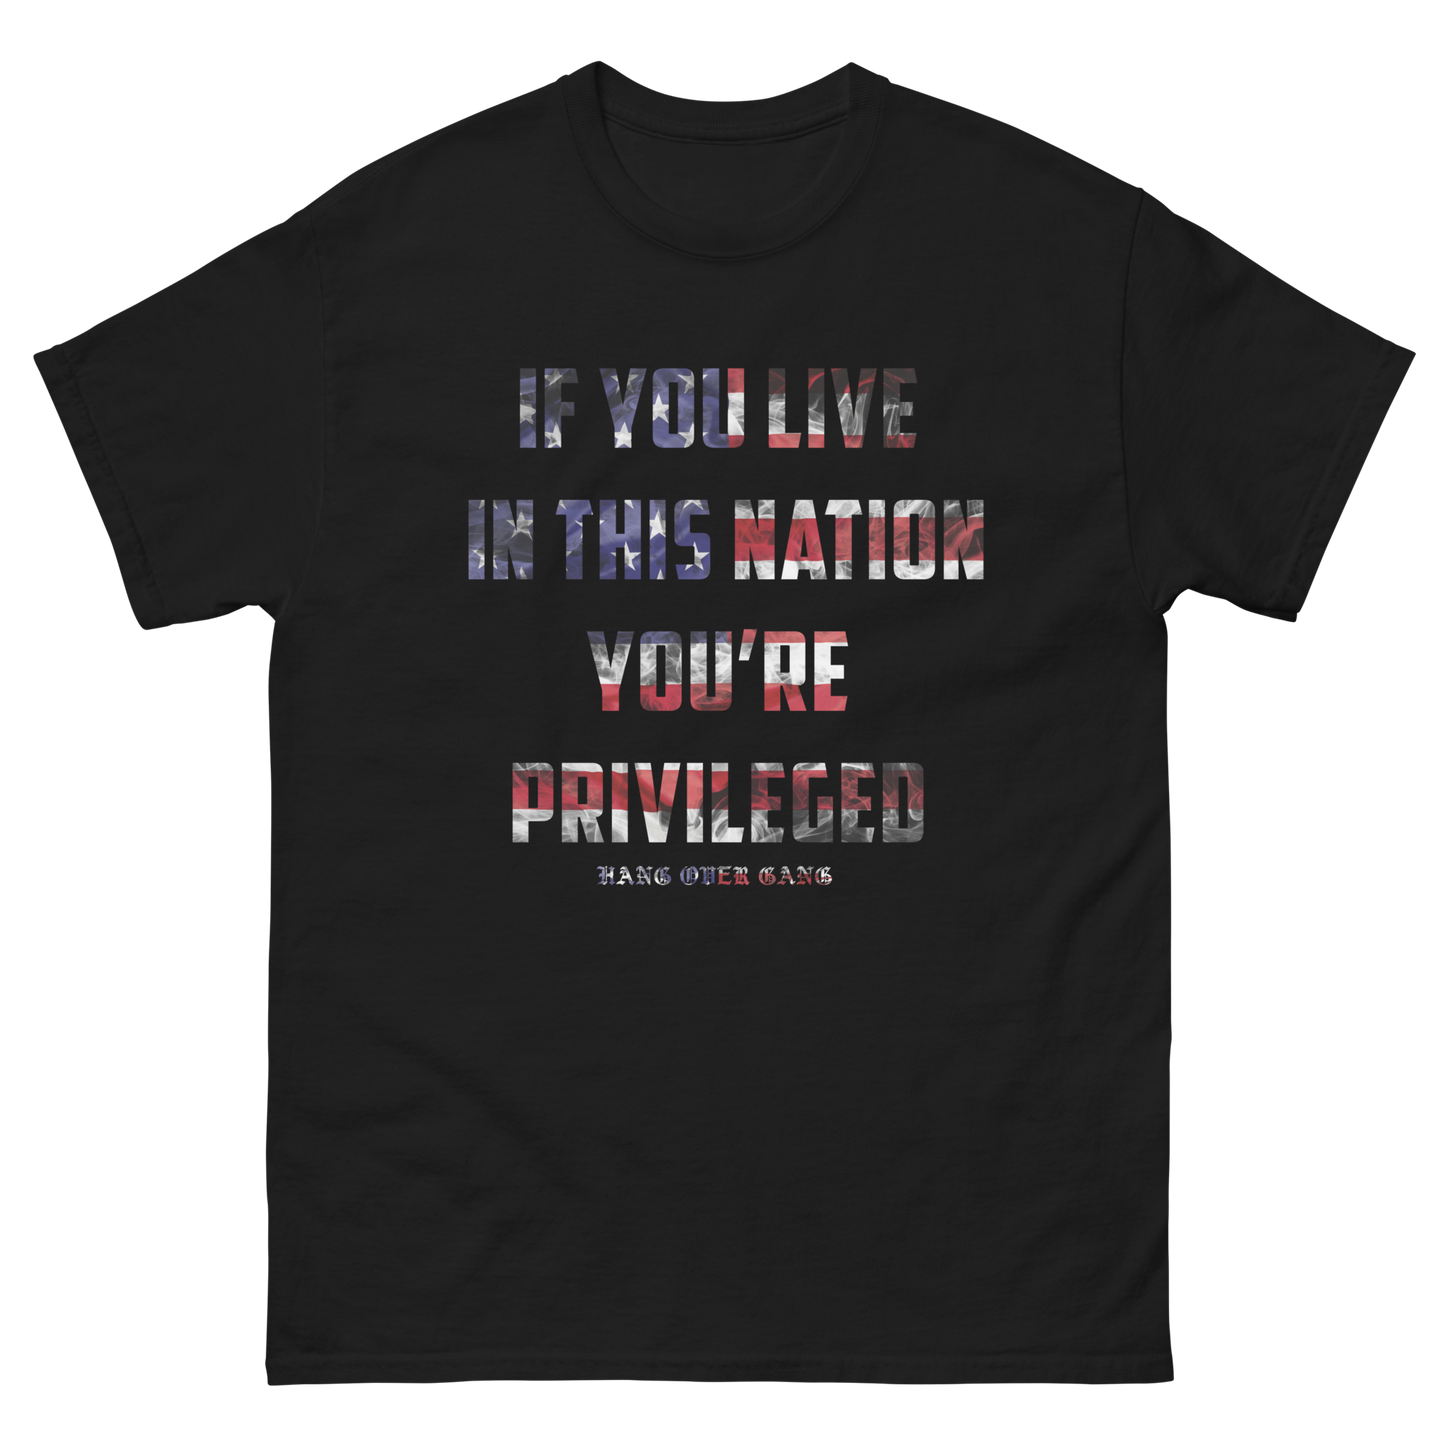 "Privileged" T-shirt